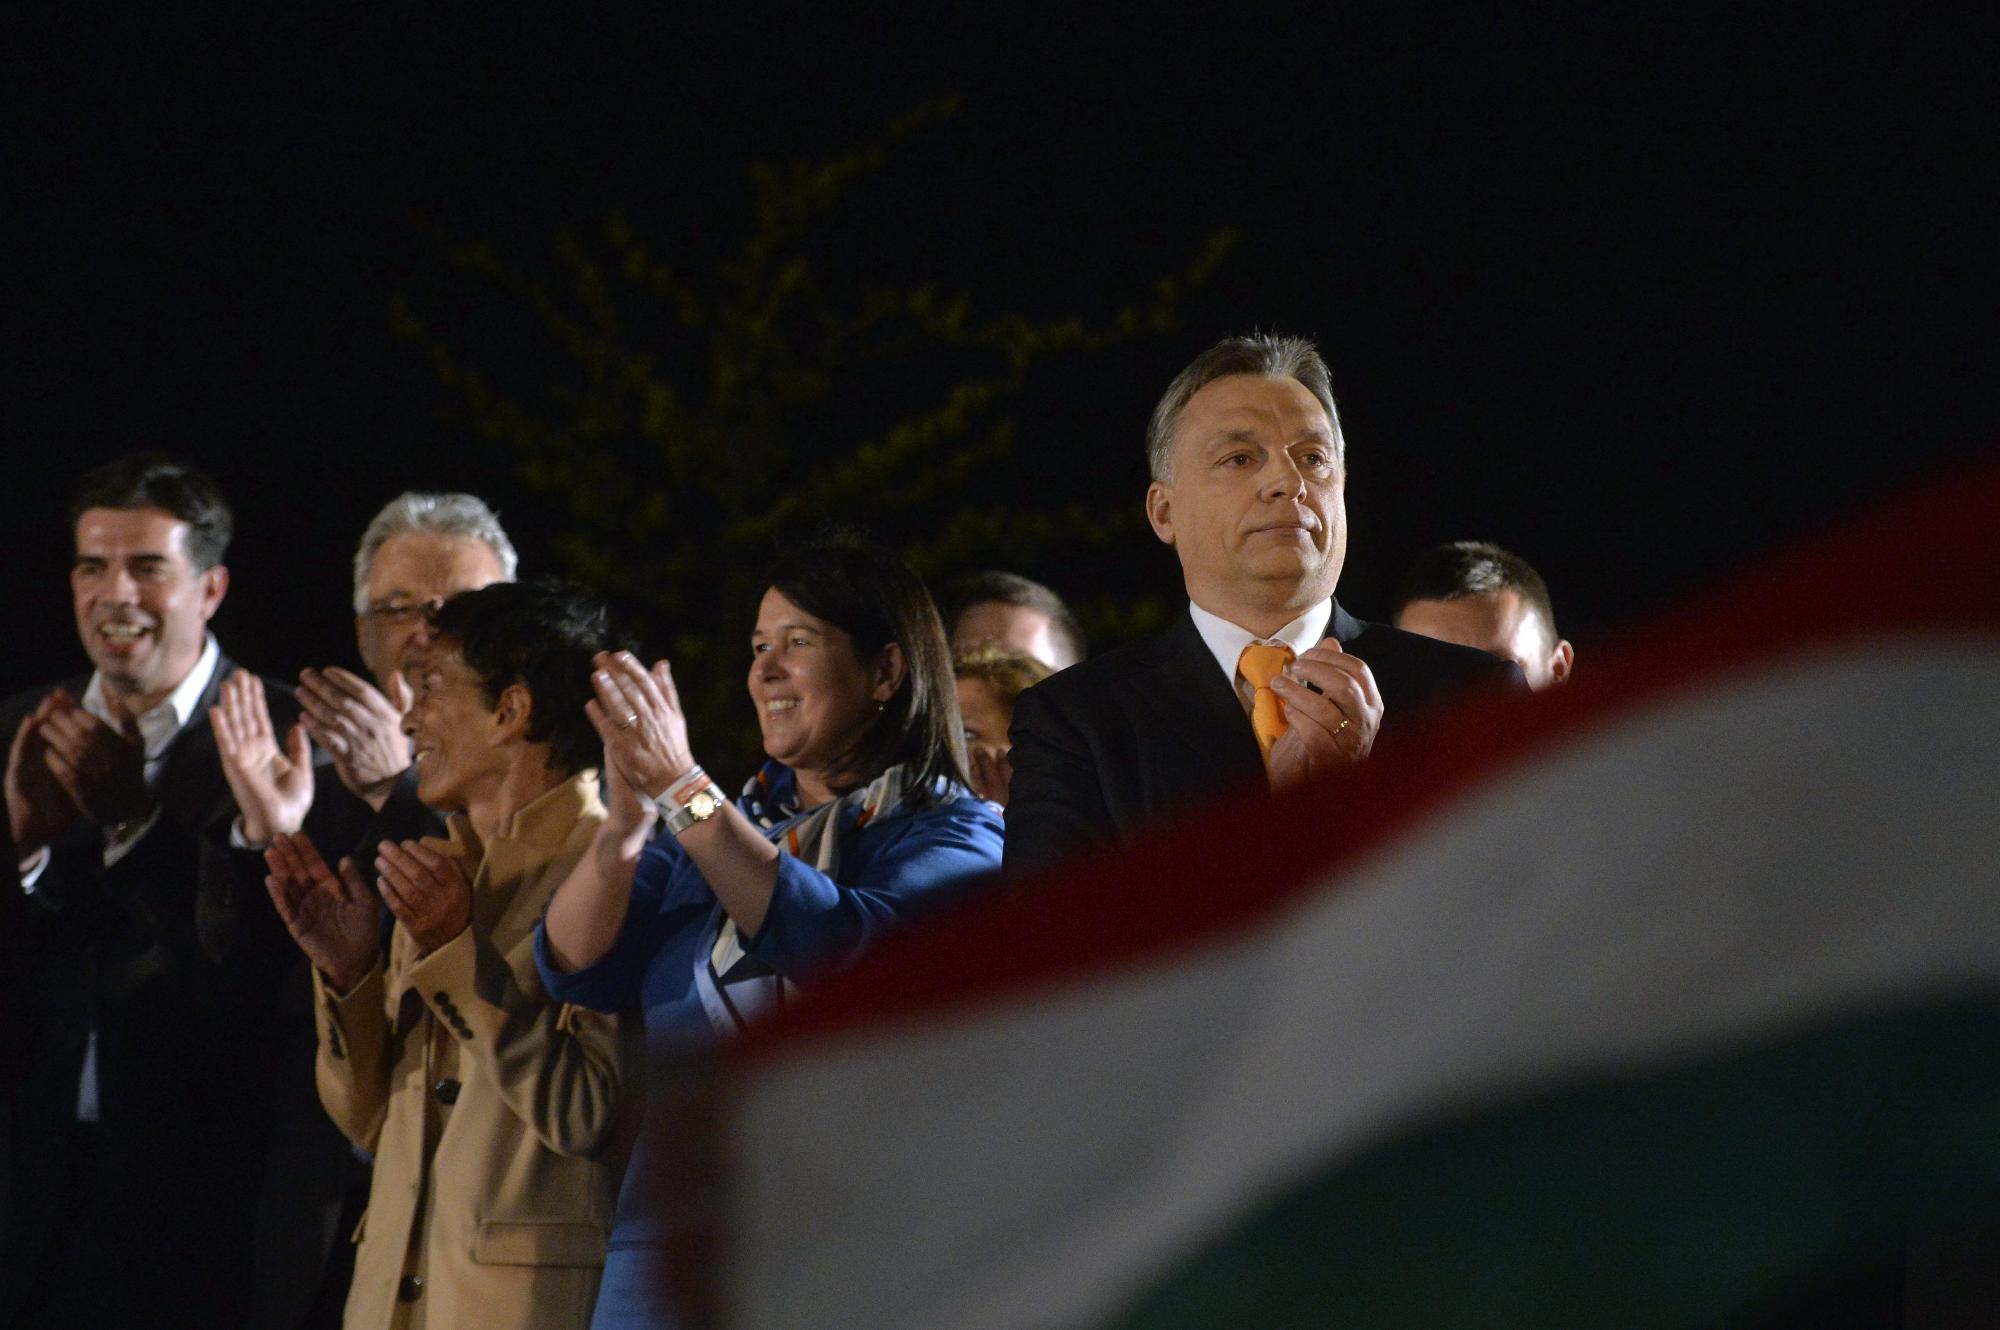 OGY2014 - Fidesz - Eredményváró